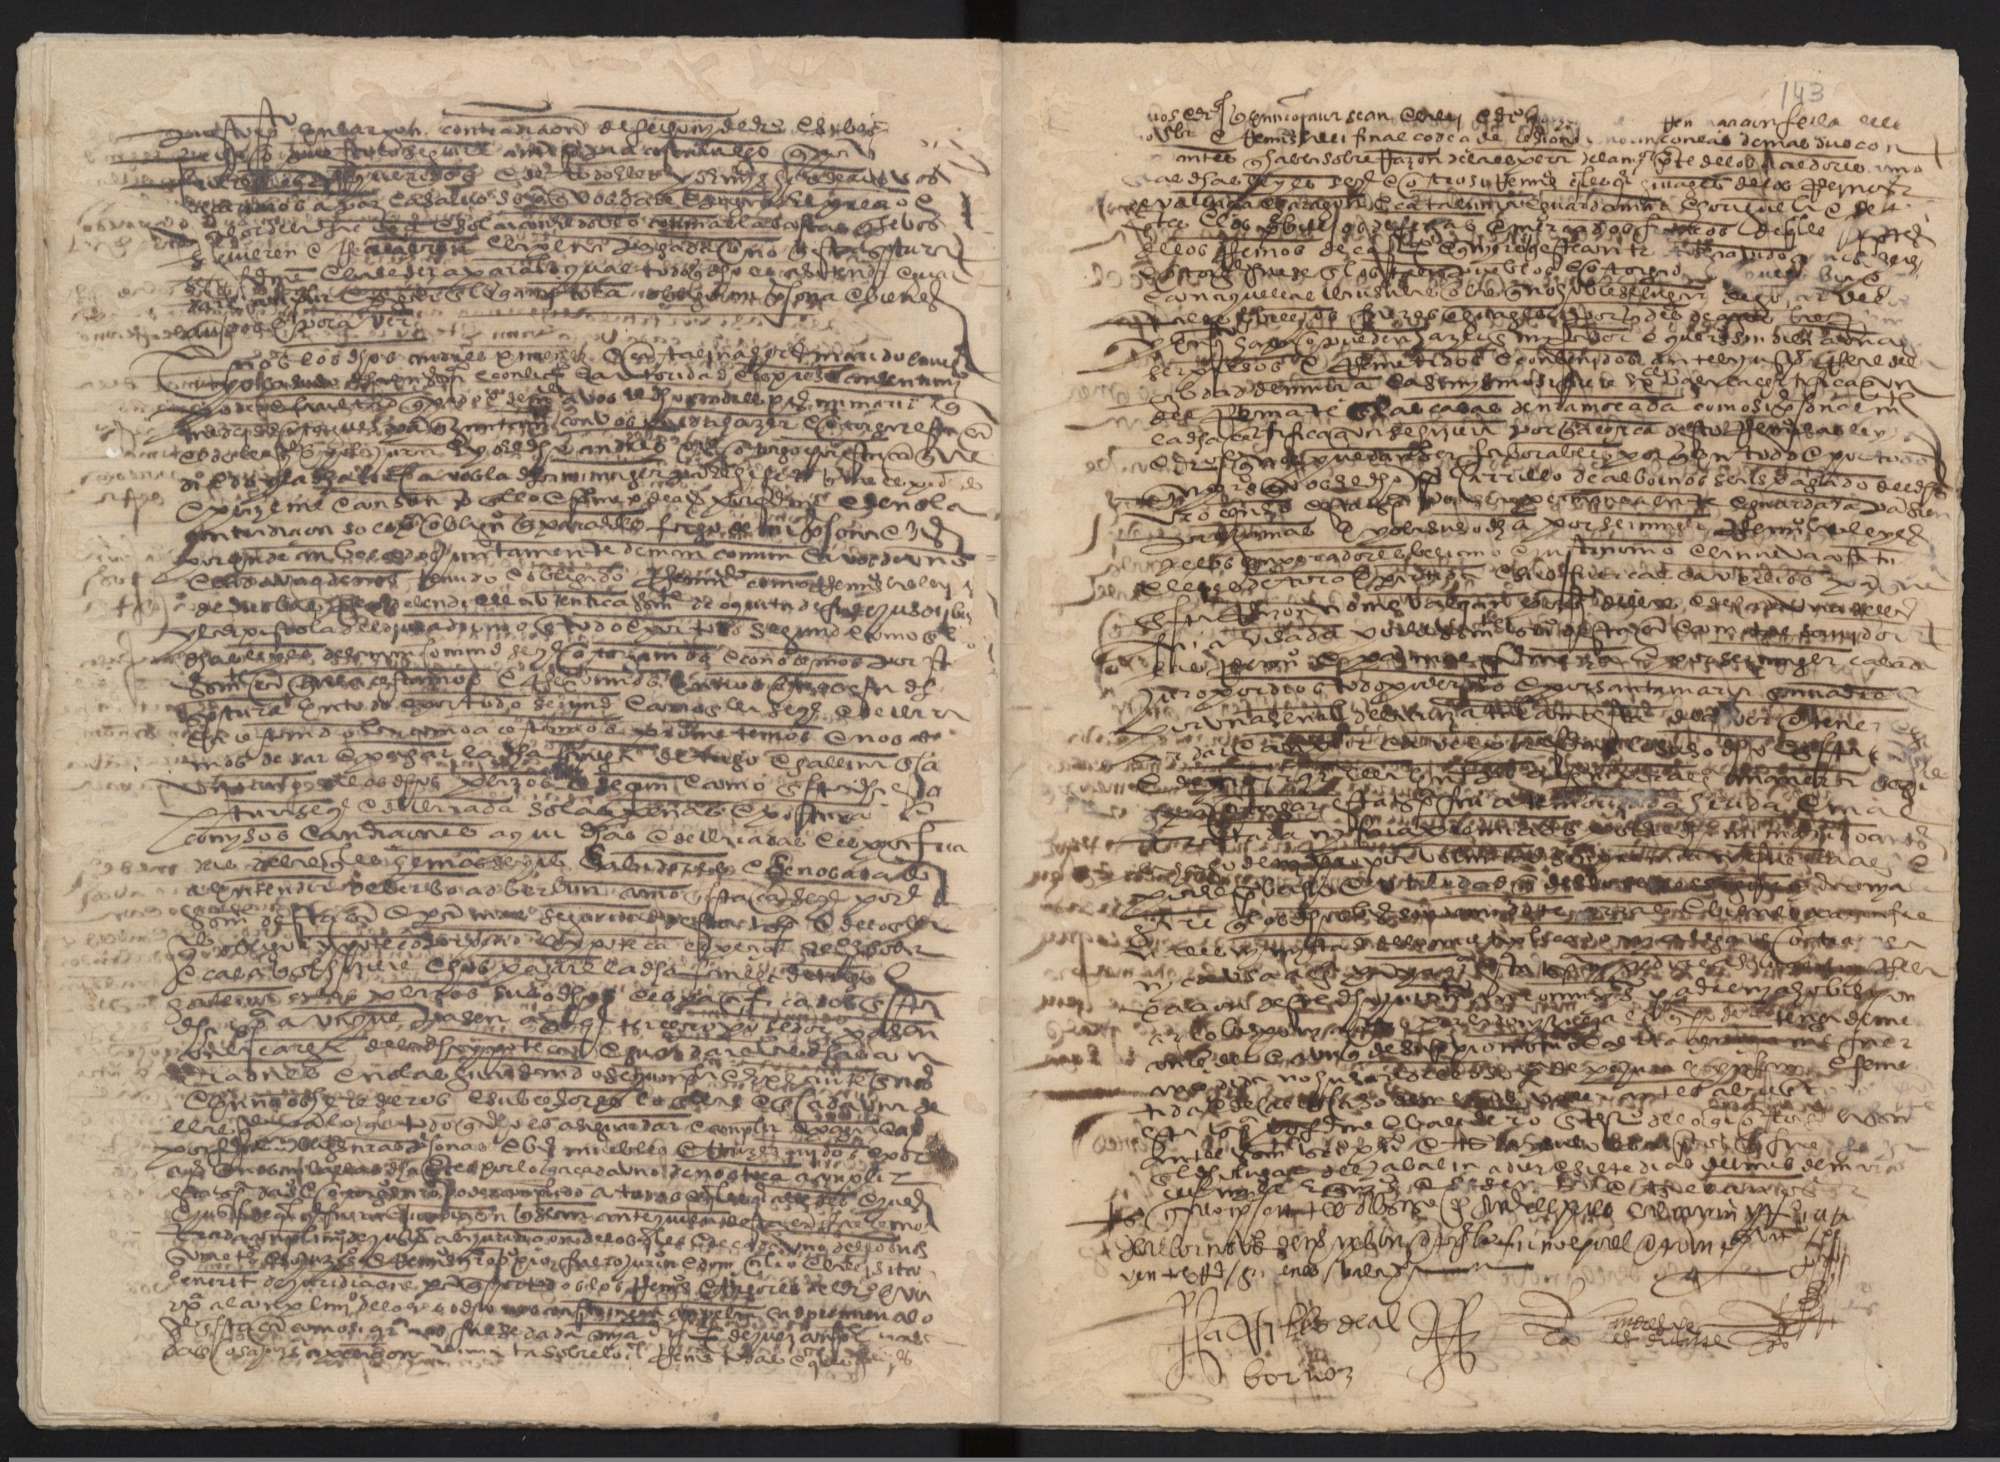 Registro de Lope del Castillo, Murcia de 1563.